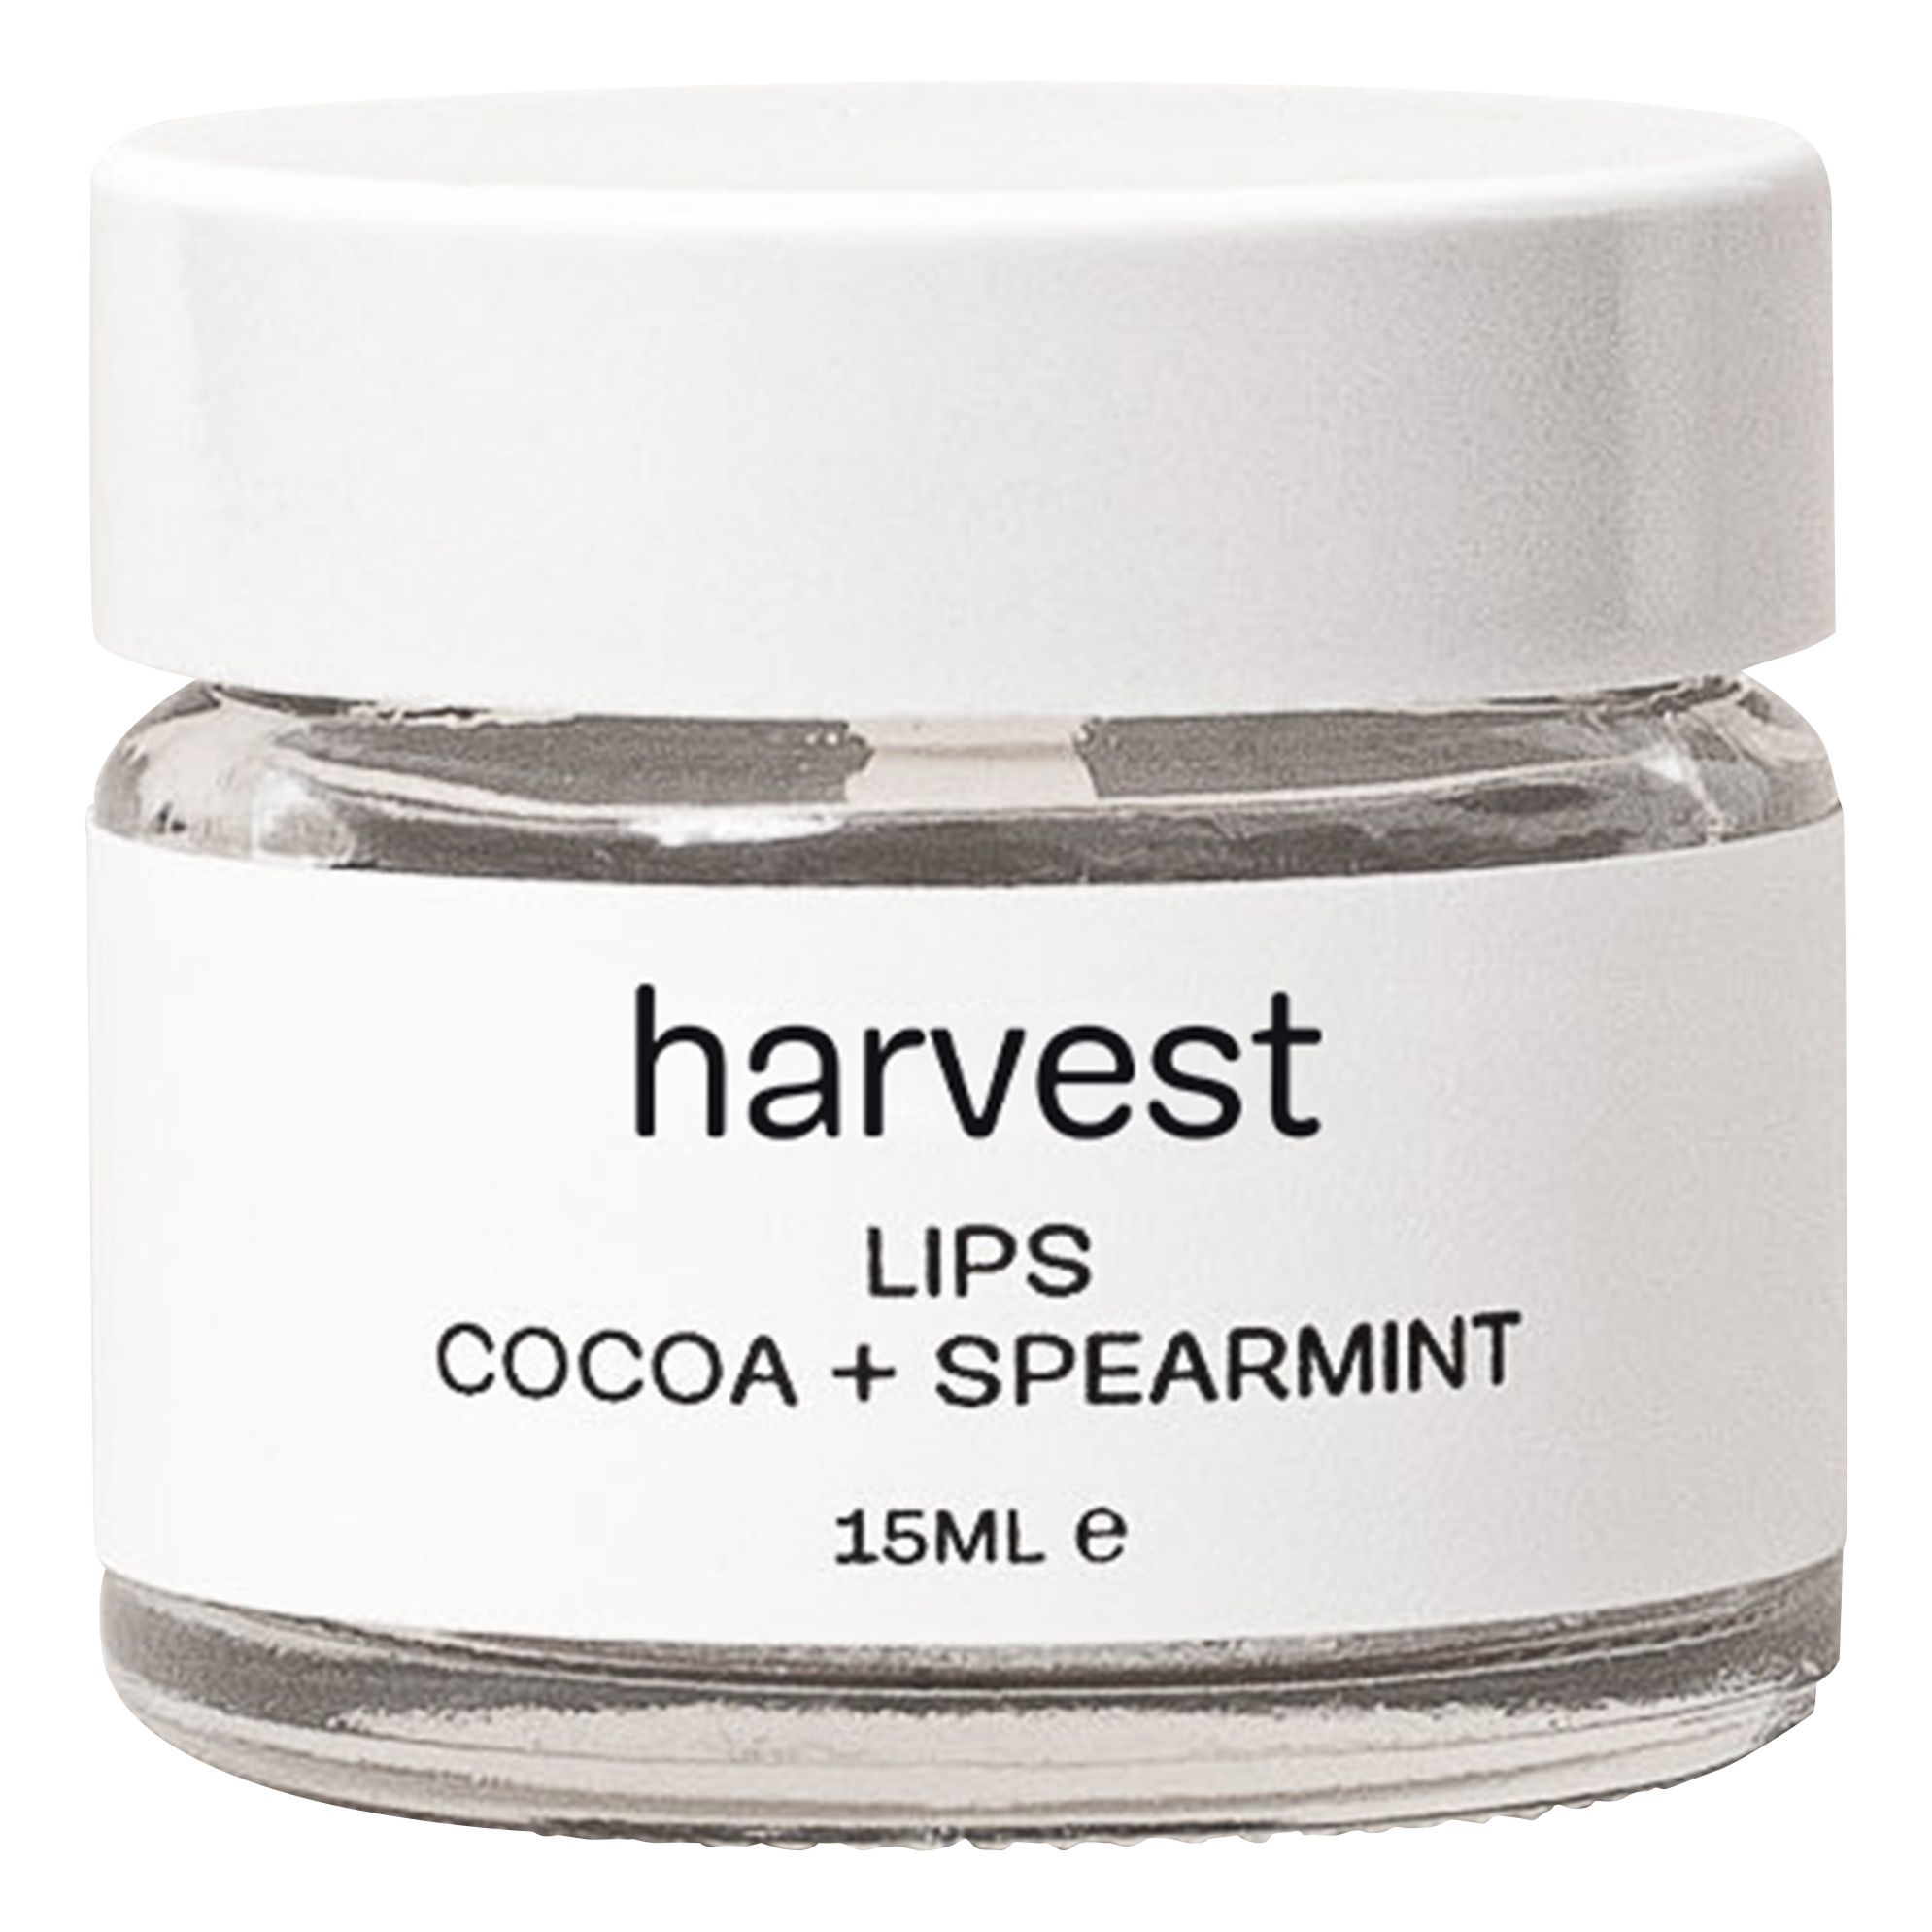 Harvest Skincare - Baume hydratant pour les lèvres - 15 ml - Transparent